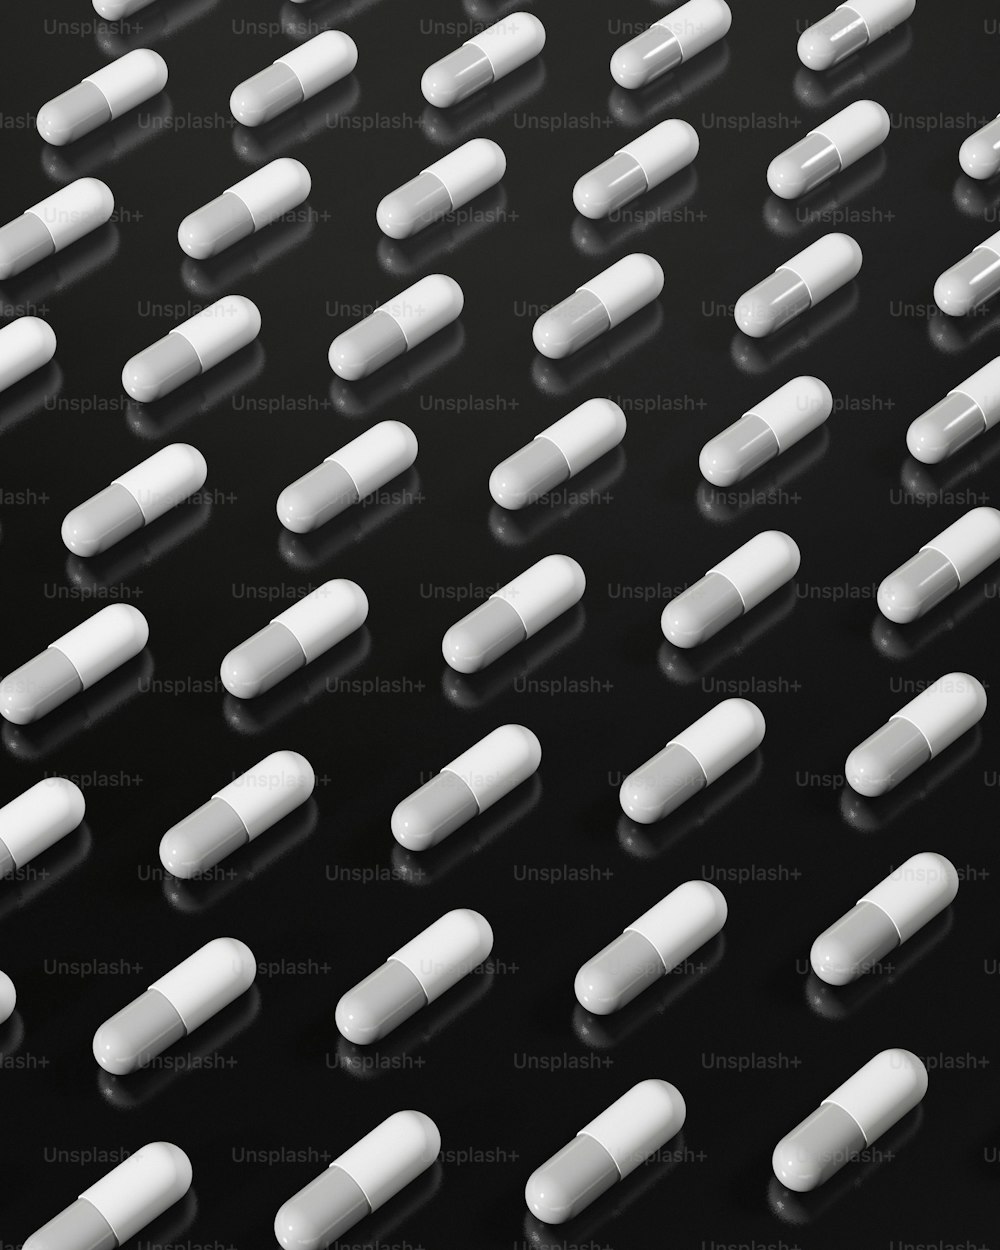 Viele weiße Pillen sind auf einer schwarzen Oberfläche angeordnet